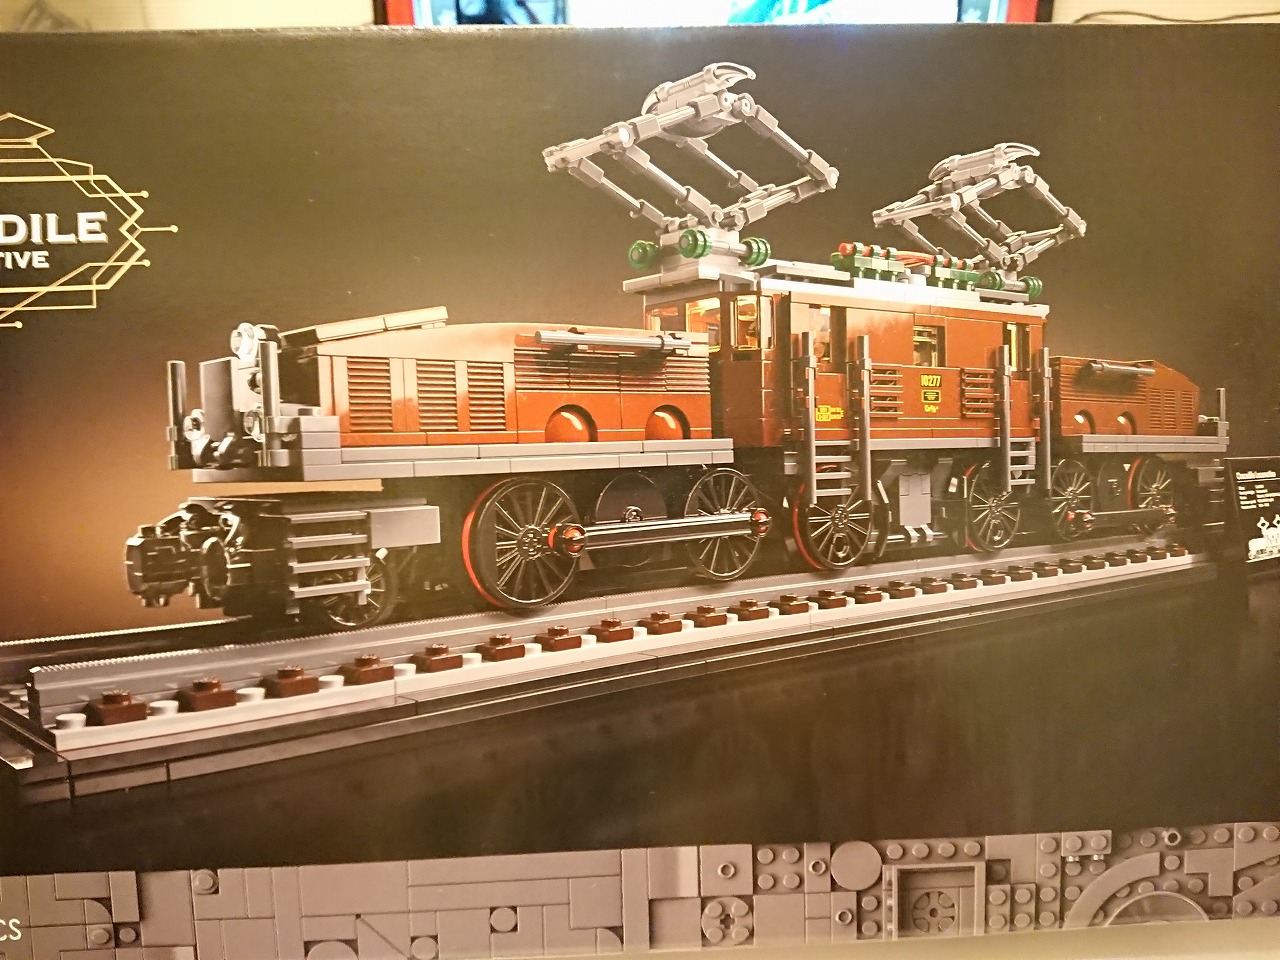 レゴ (LEGO) クリエイターエキスパート クロコダイル電気機関車 10277 を作ってみた(その1)～土台の作成～